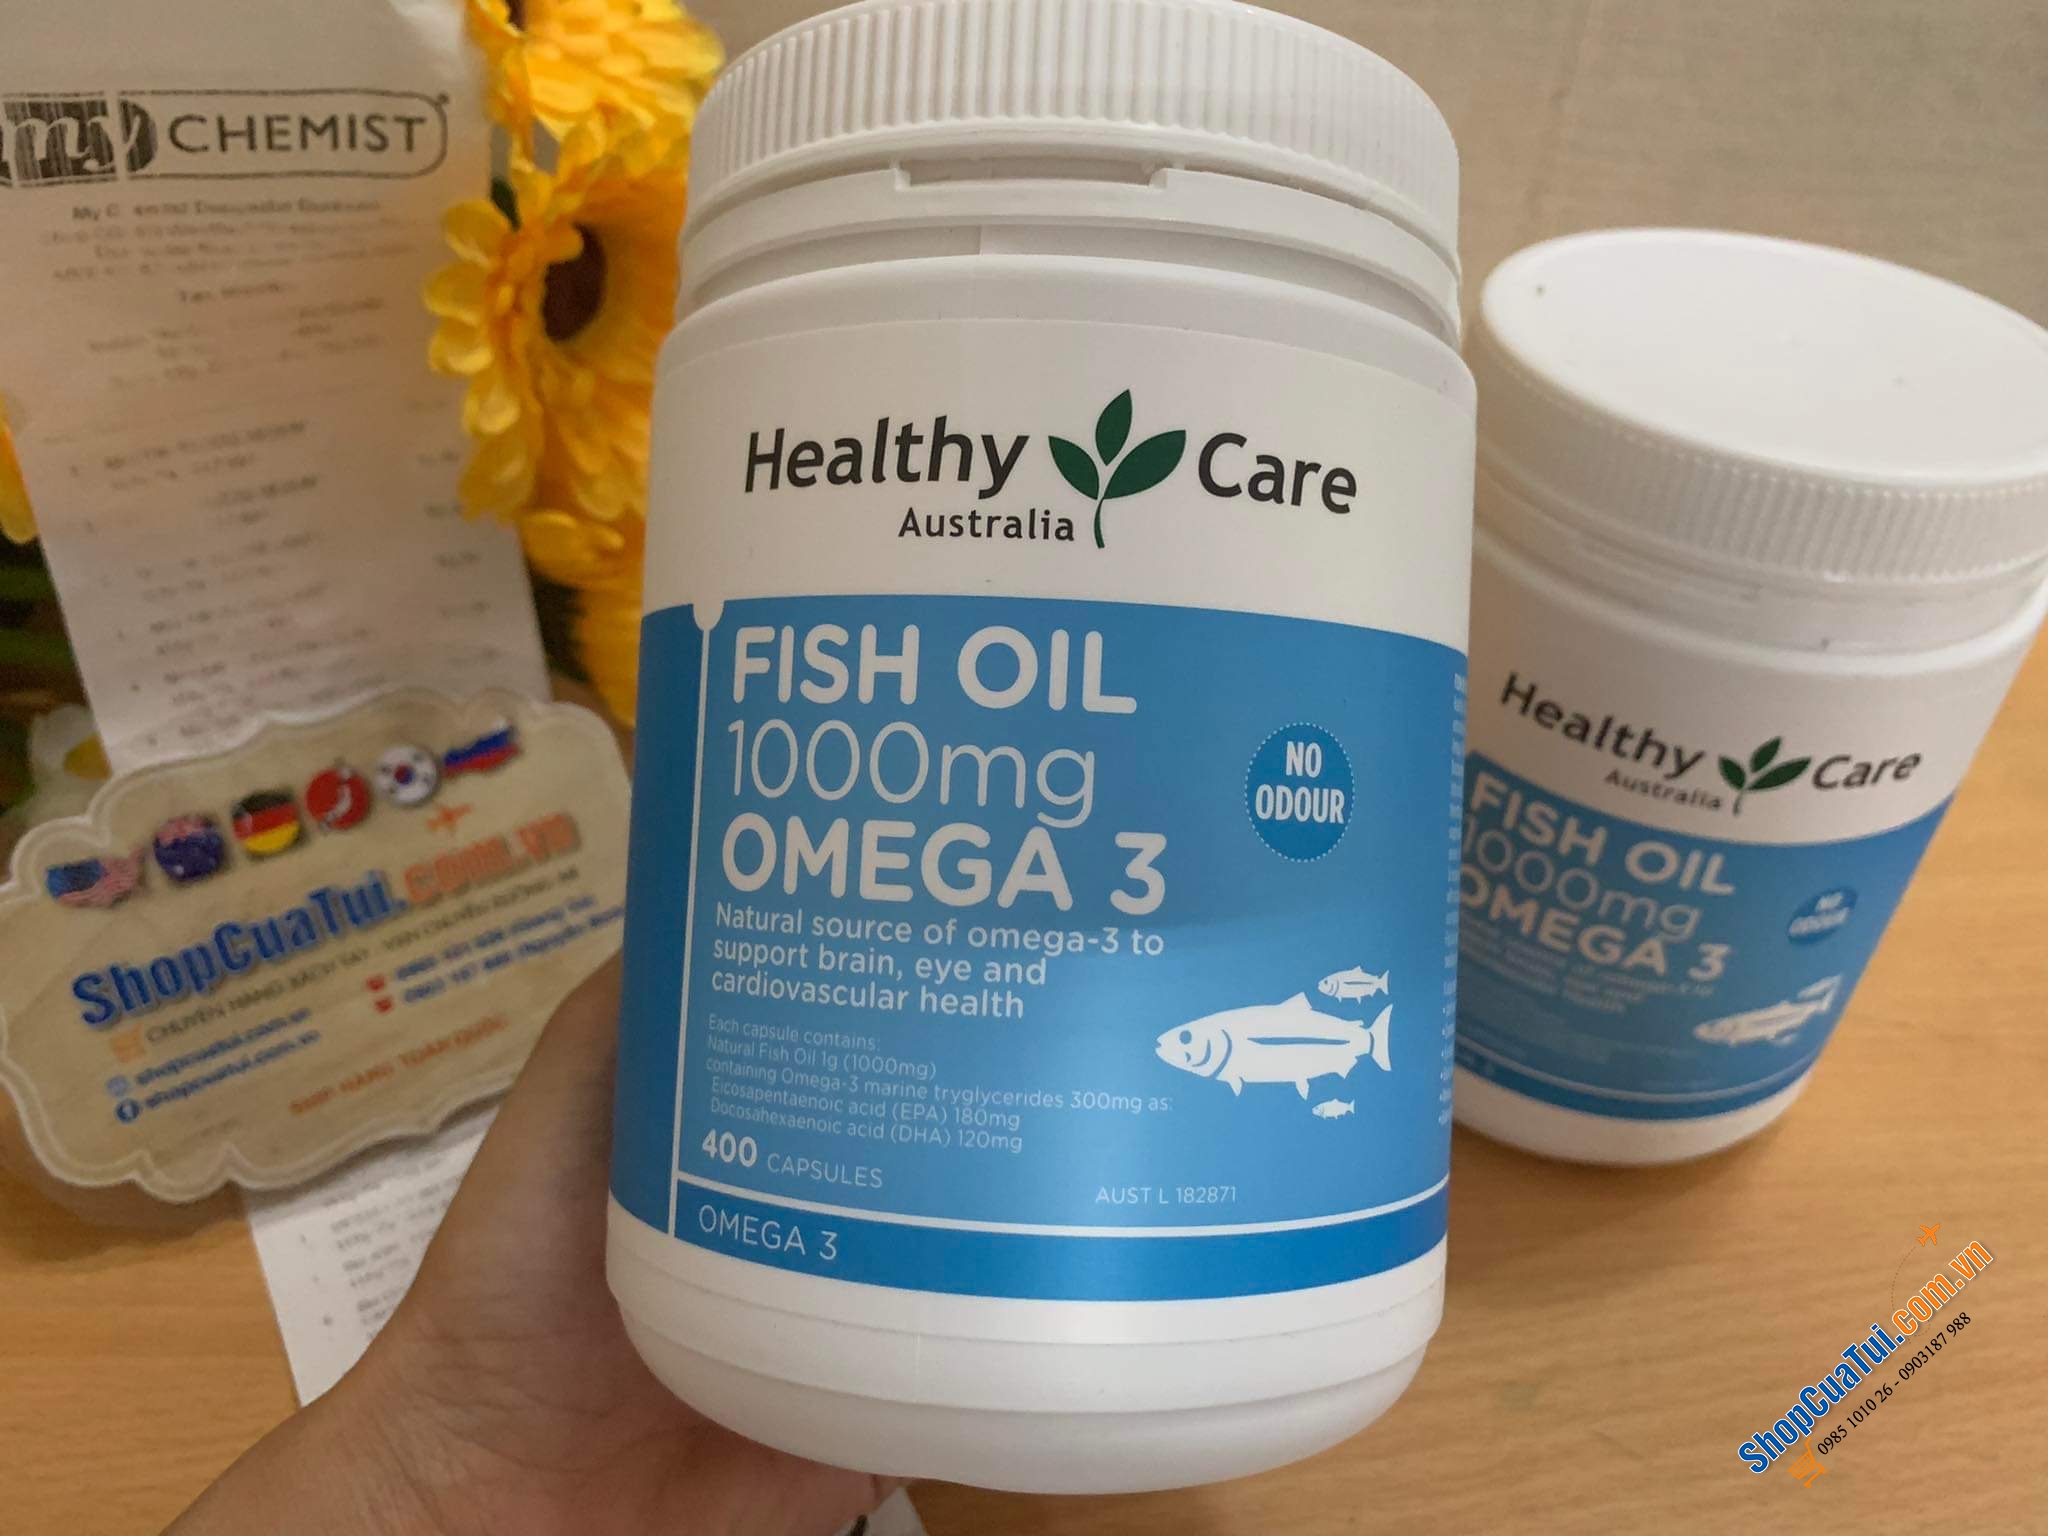 DẦU CÁ TỰ NHIÊN Healthy Care Fish Oil 1000mg Omega 3 400 caspules không mùi hỗ trợ sức khỏe tim, não, mắt và tim mạch